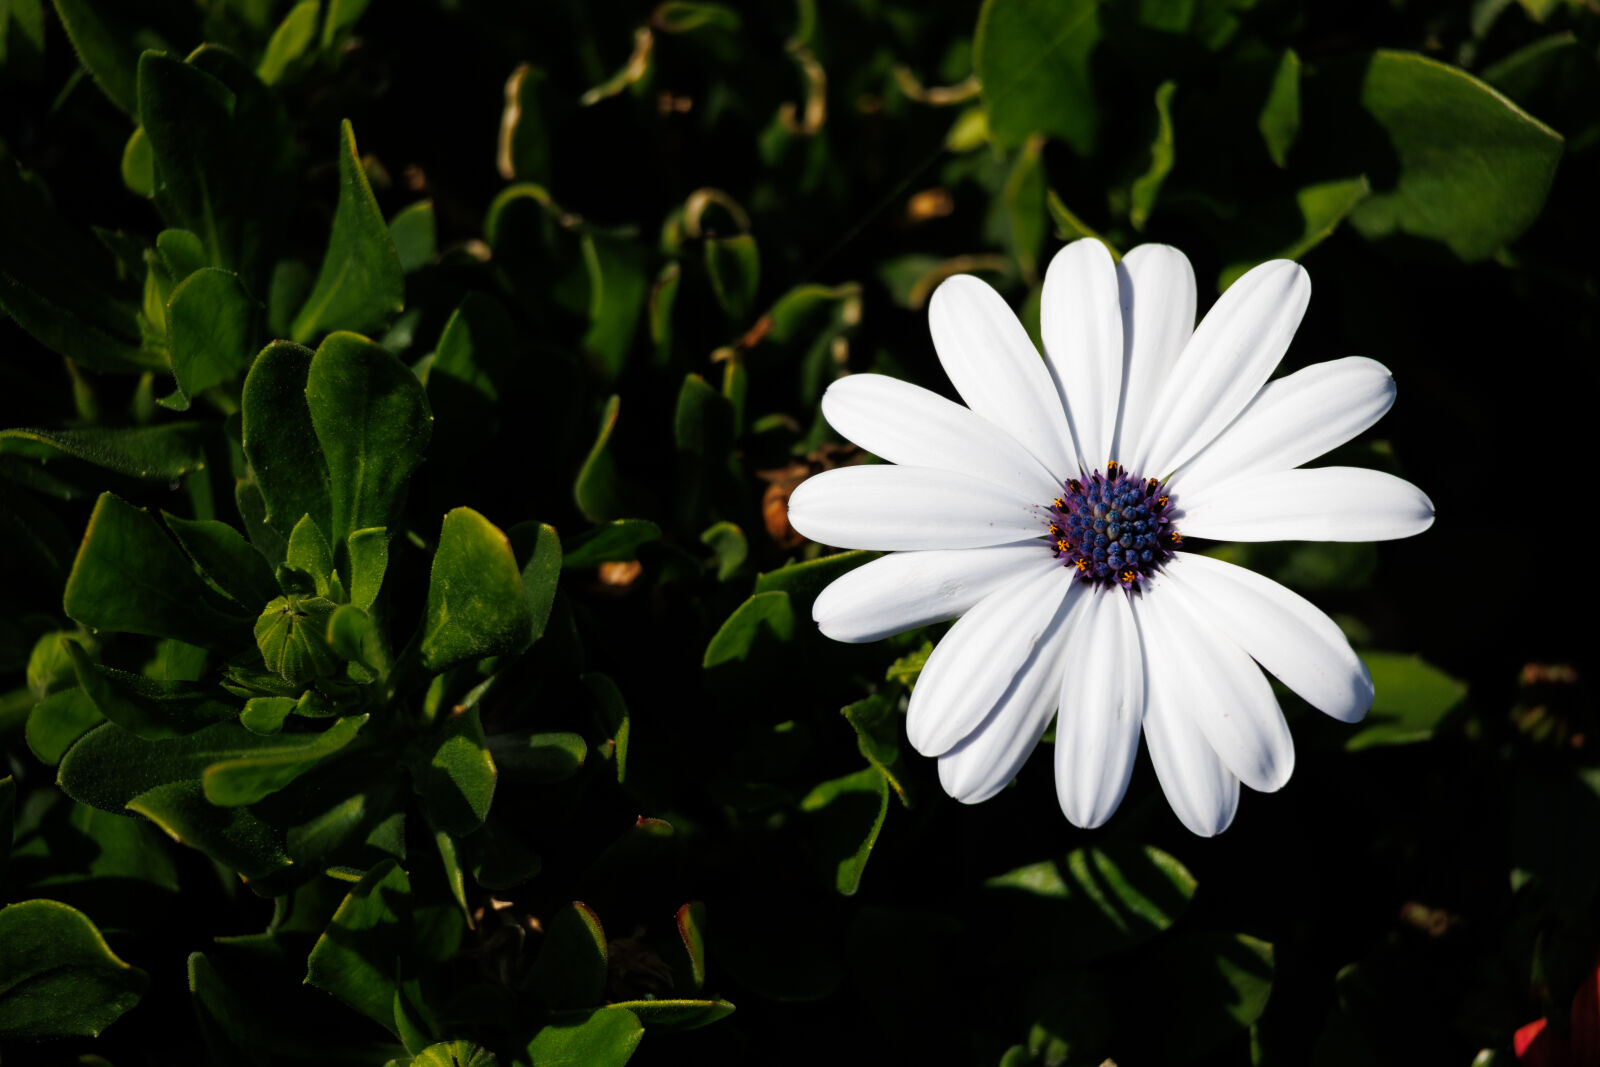 Canon EOS R100 sample photo. Flower sun photography